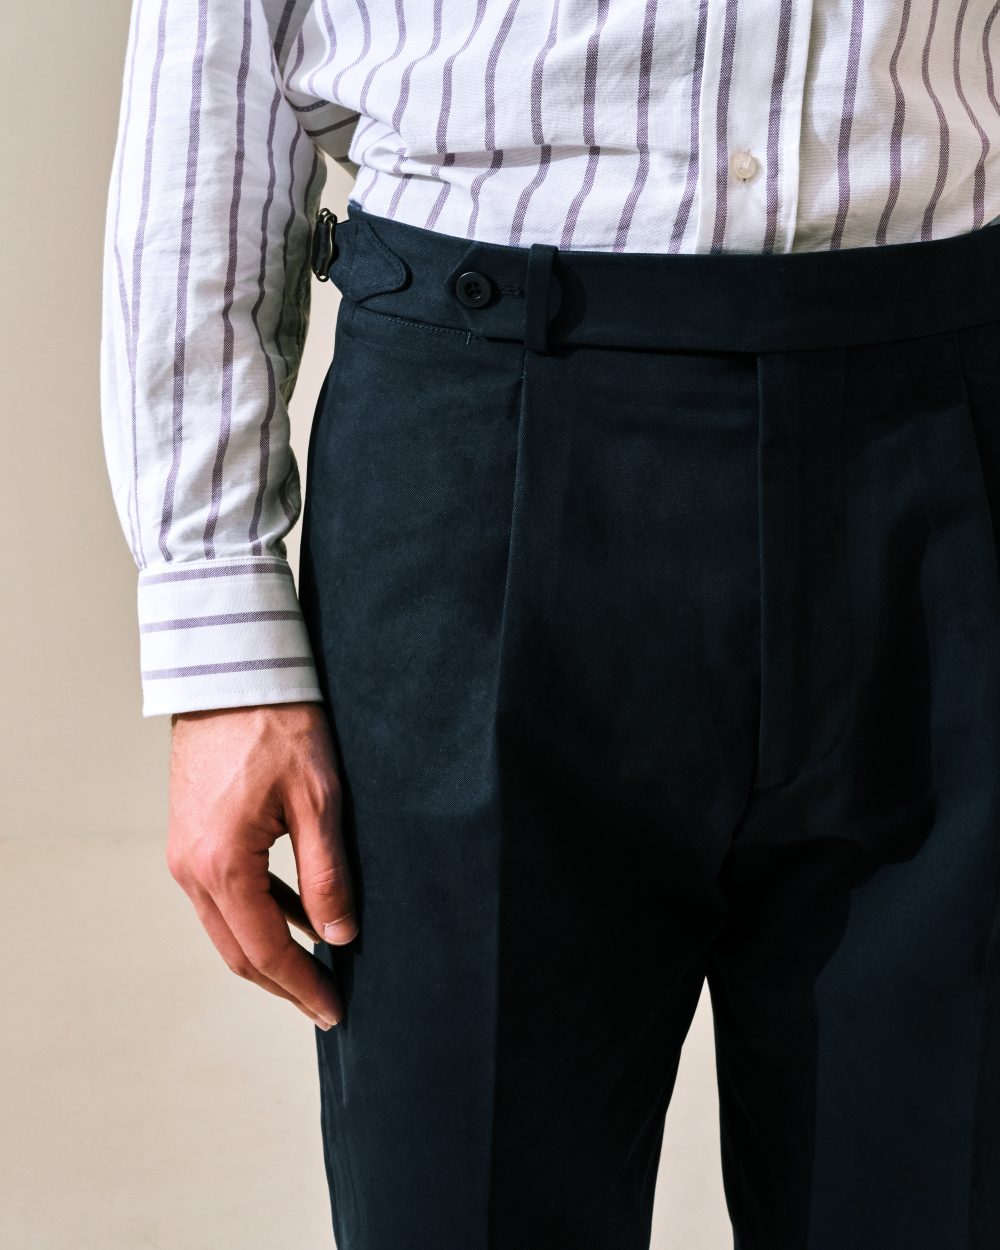 Pantalon Coupe Une Pince S3 / Coton Chino